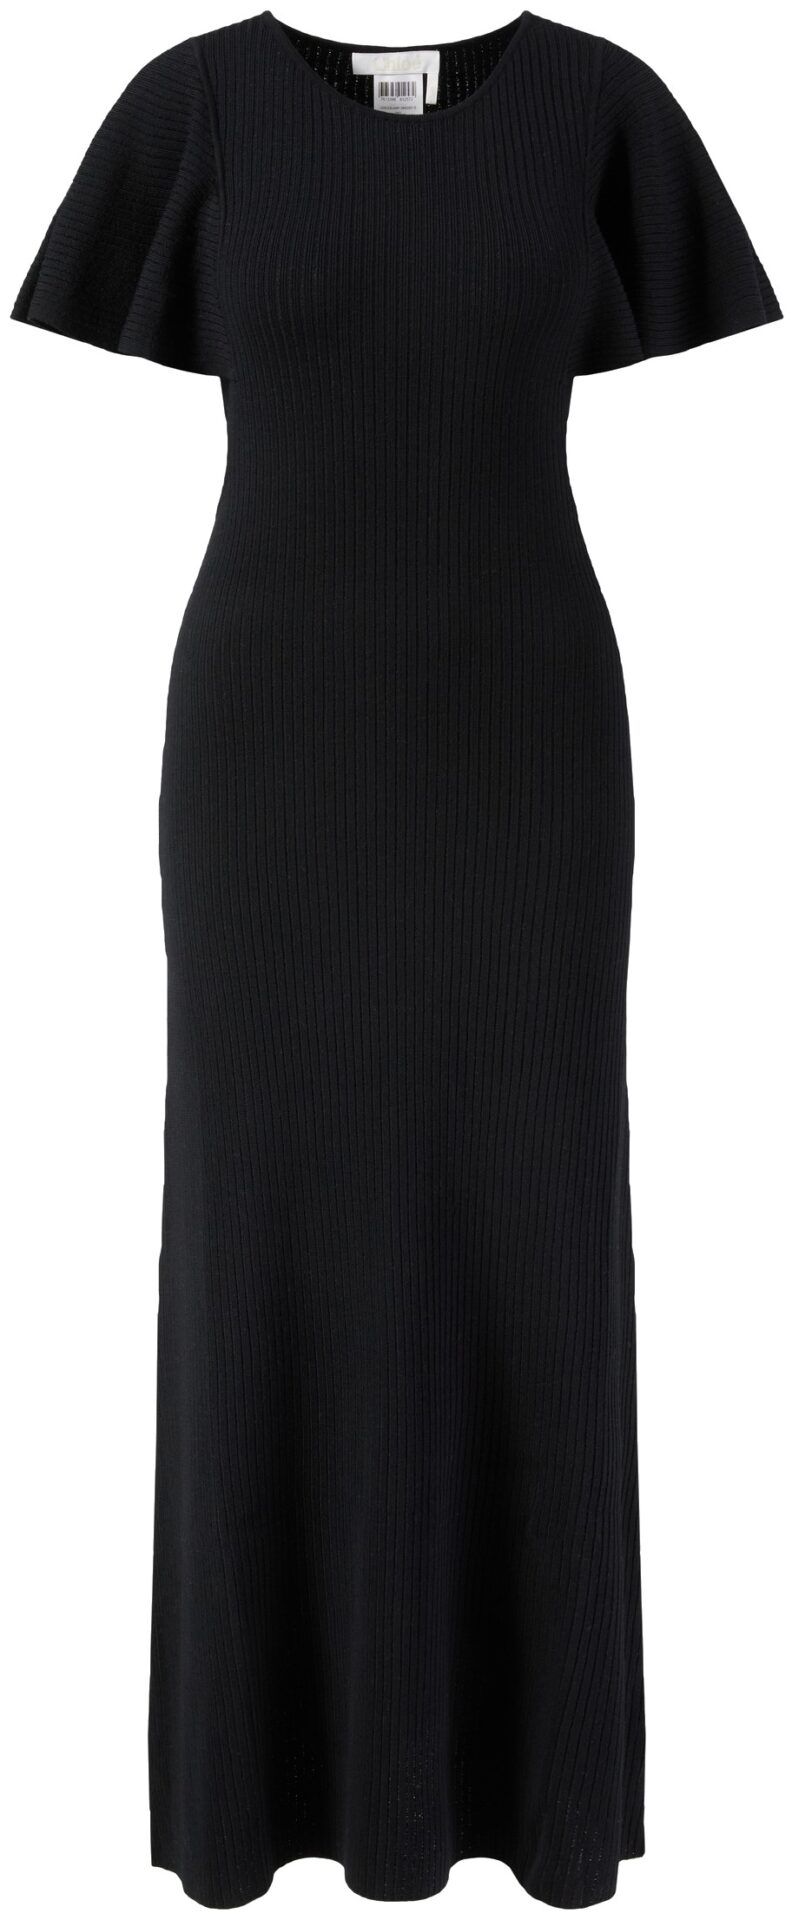 Dress (Black Knit) | style